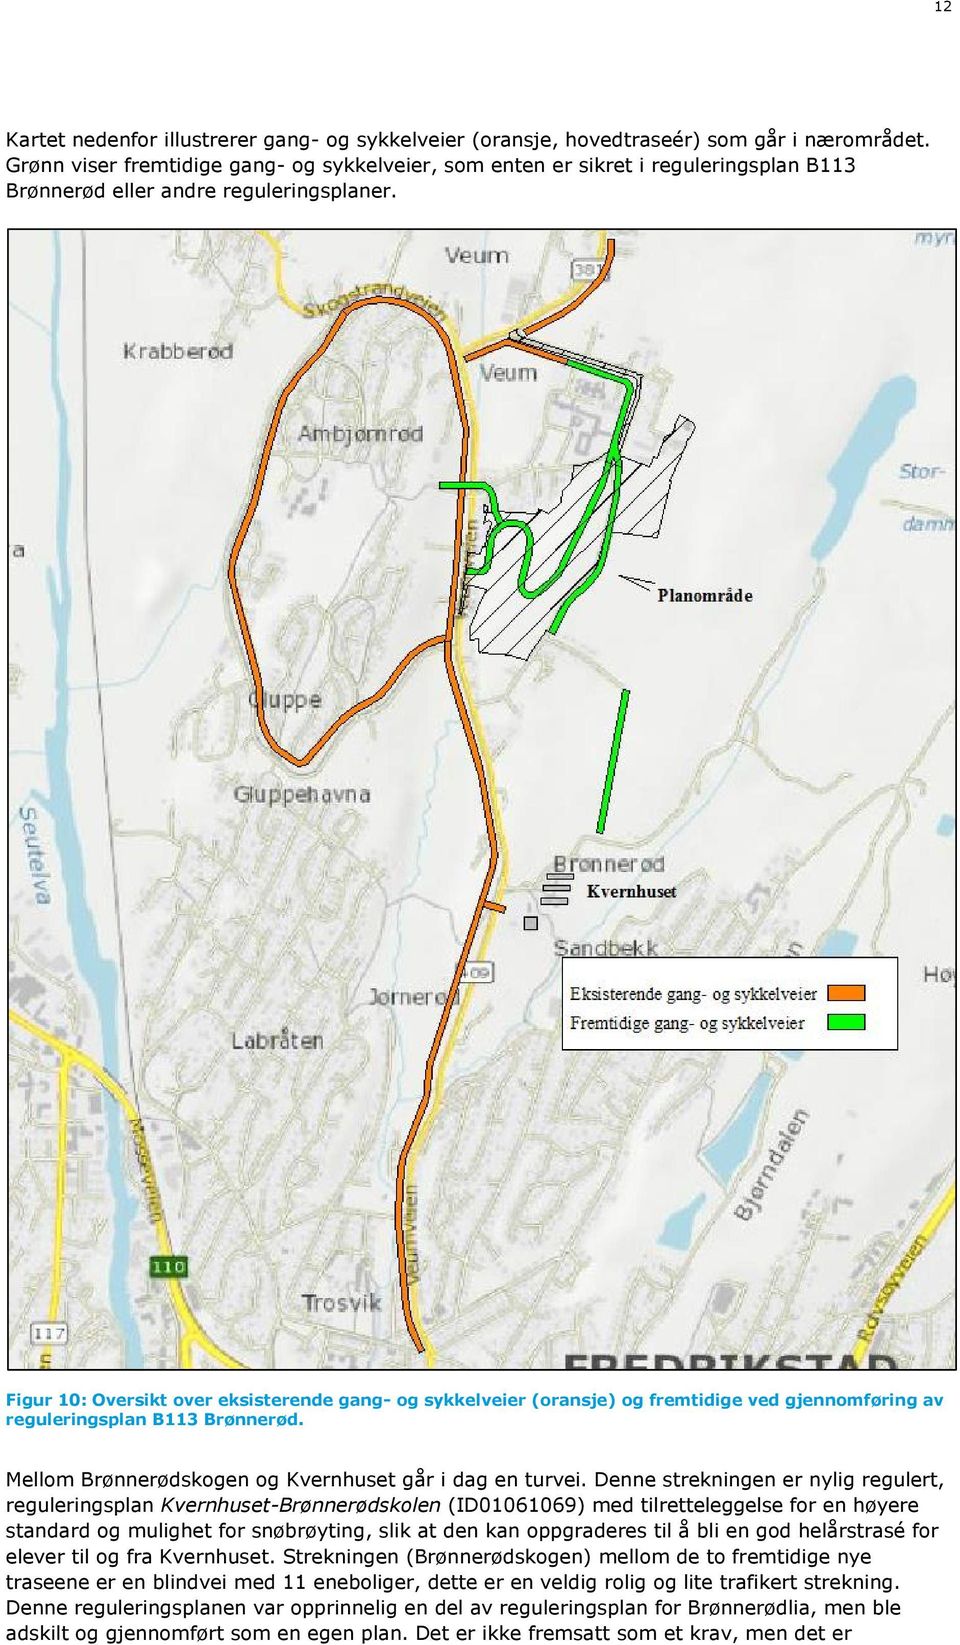 Figur 10: Oversikt over eksisterende gang- og sykkelveier (oransje) og fremtidige ved gjennomføring av reguleringsplan B113 Brønnerød. Mellom Brønnerødskogen og Kvernhuset går i dag en turvei.